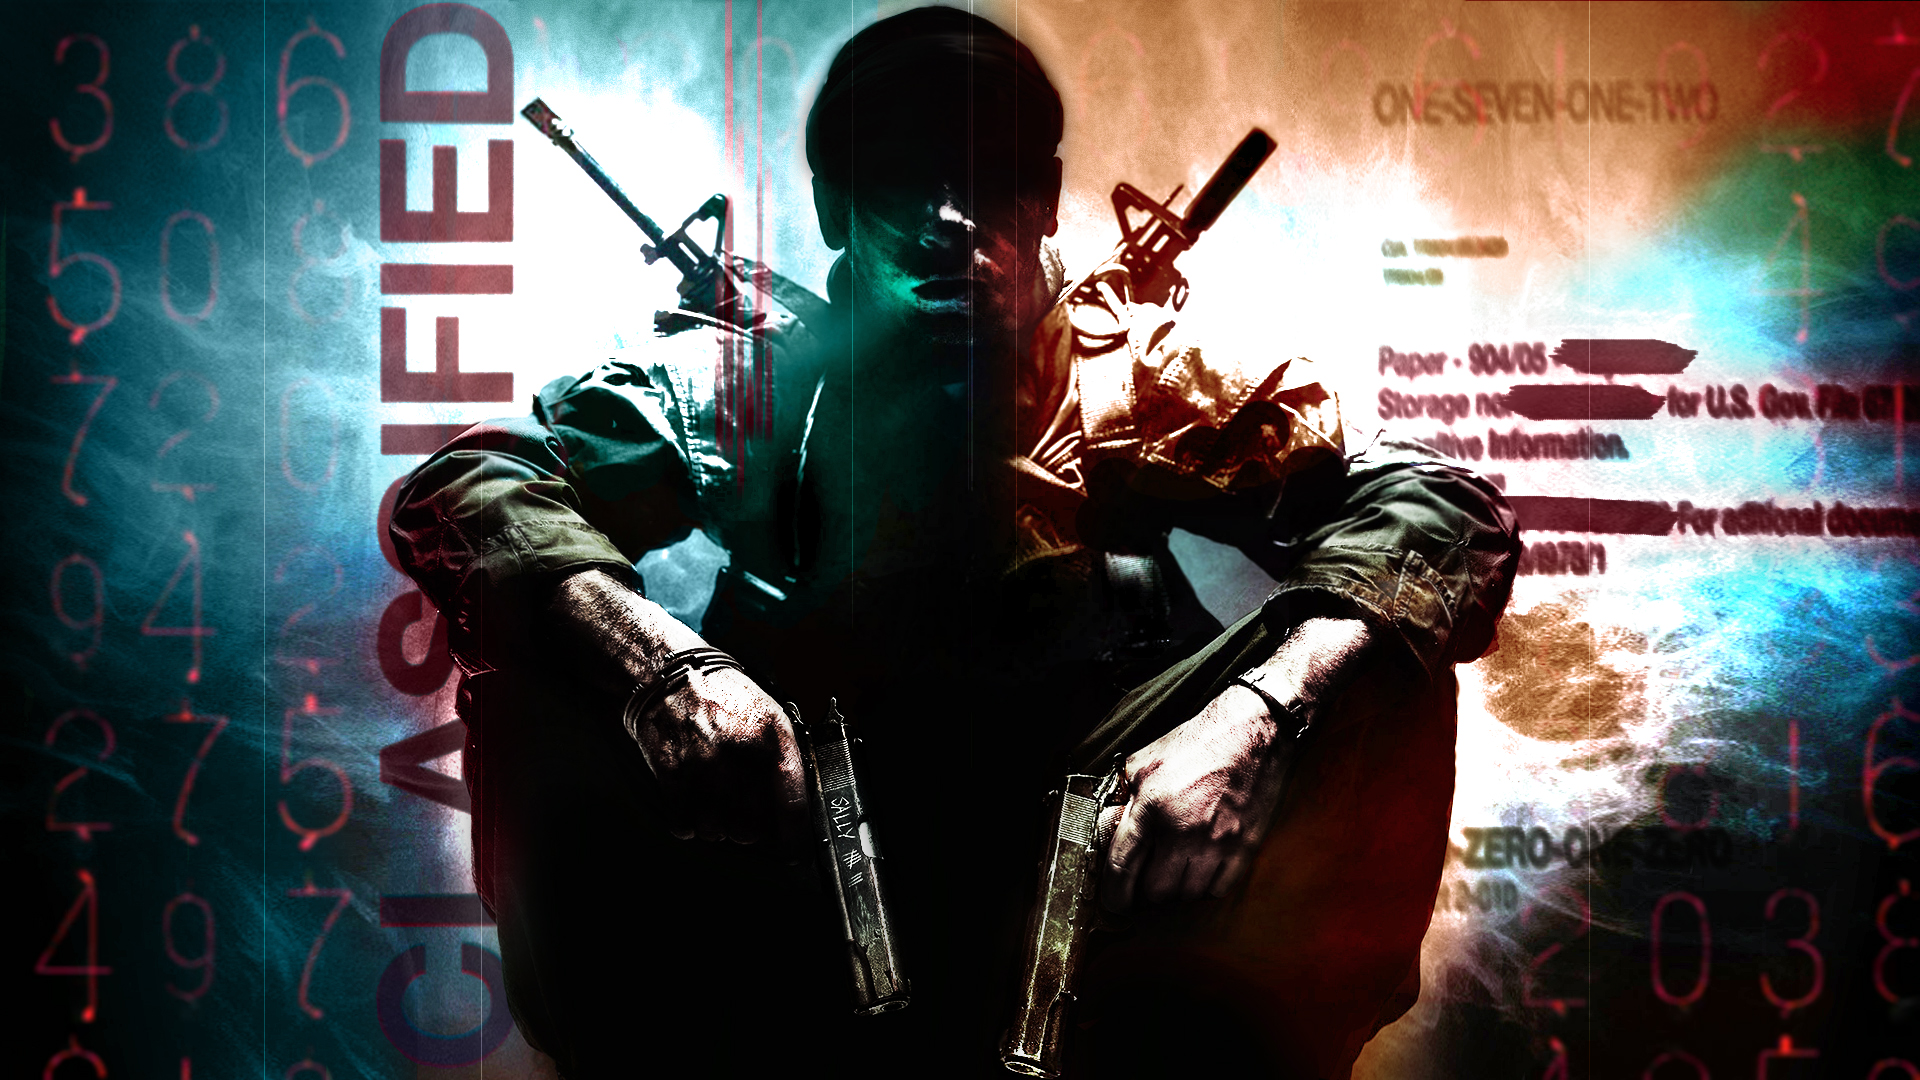 48+] COD Black Ops Wallpaper Download - WallpaperSafari